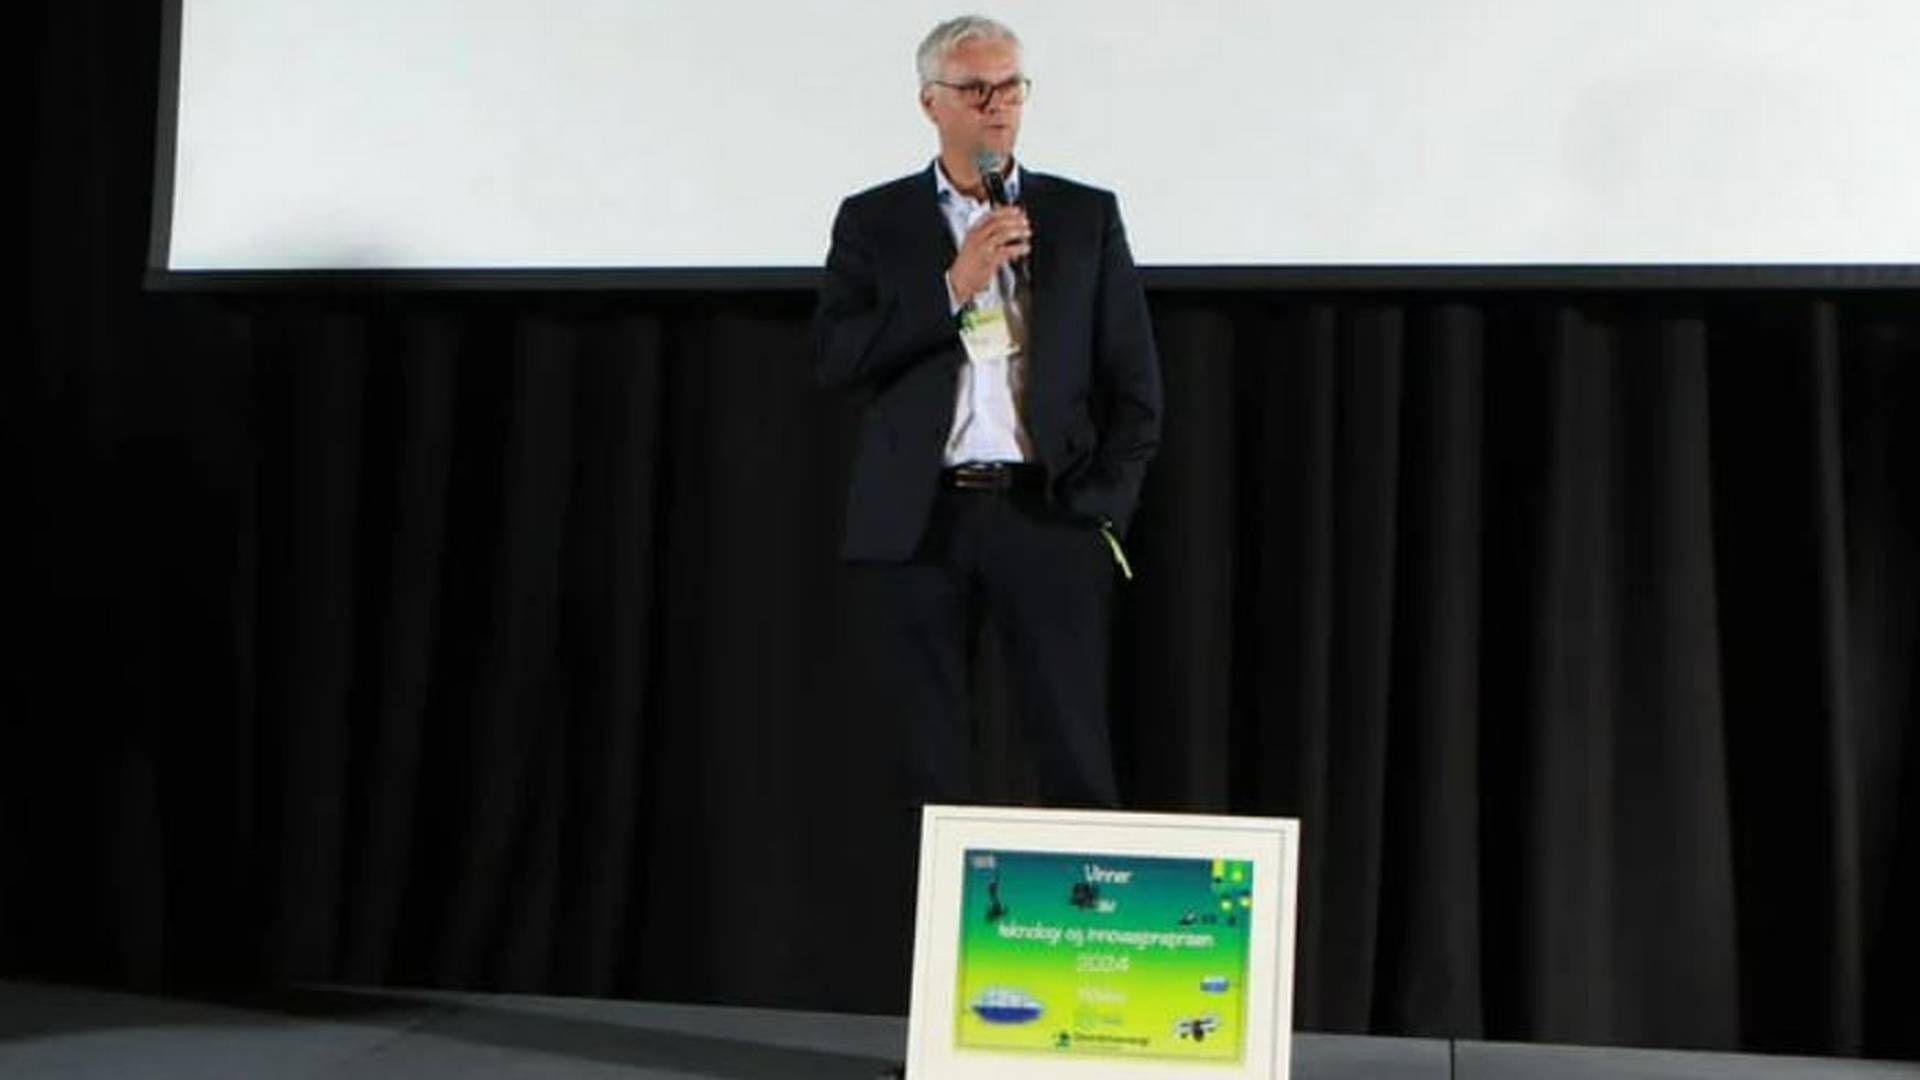 Idar Sønstabø, administrerende direktør i Dalane Energi, tok i mot prisen på Geilo. | Foto: Fredrik Kveen/Distriktsenergi